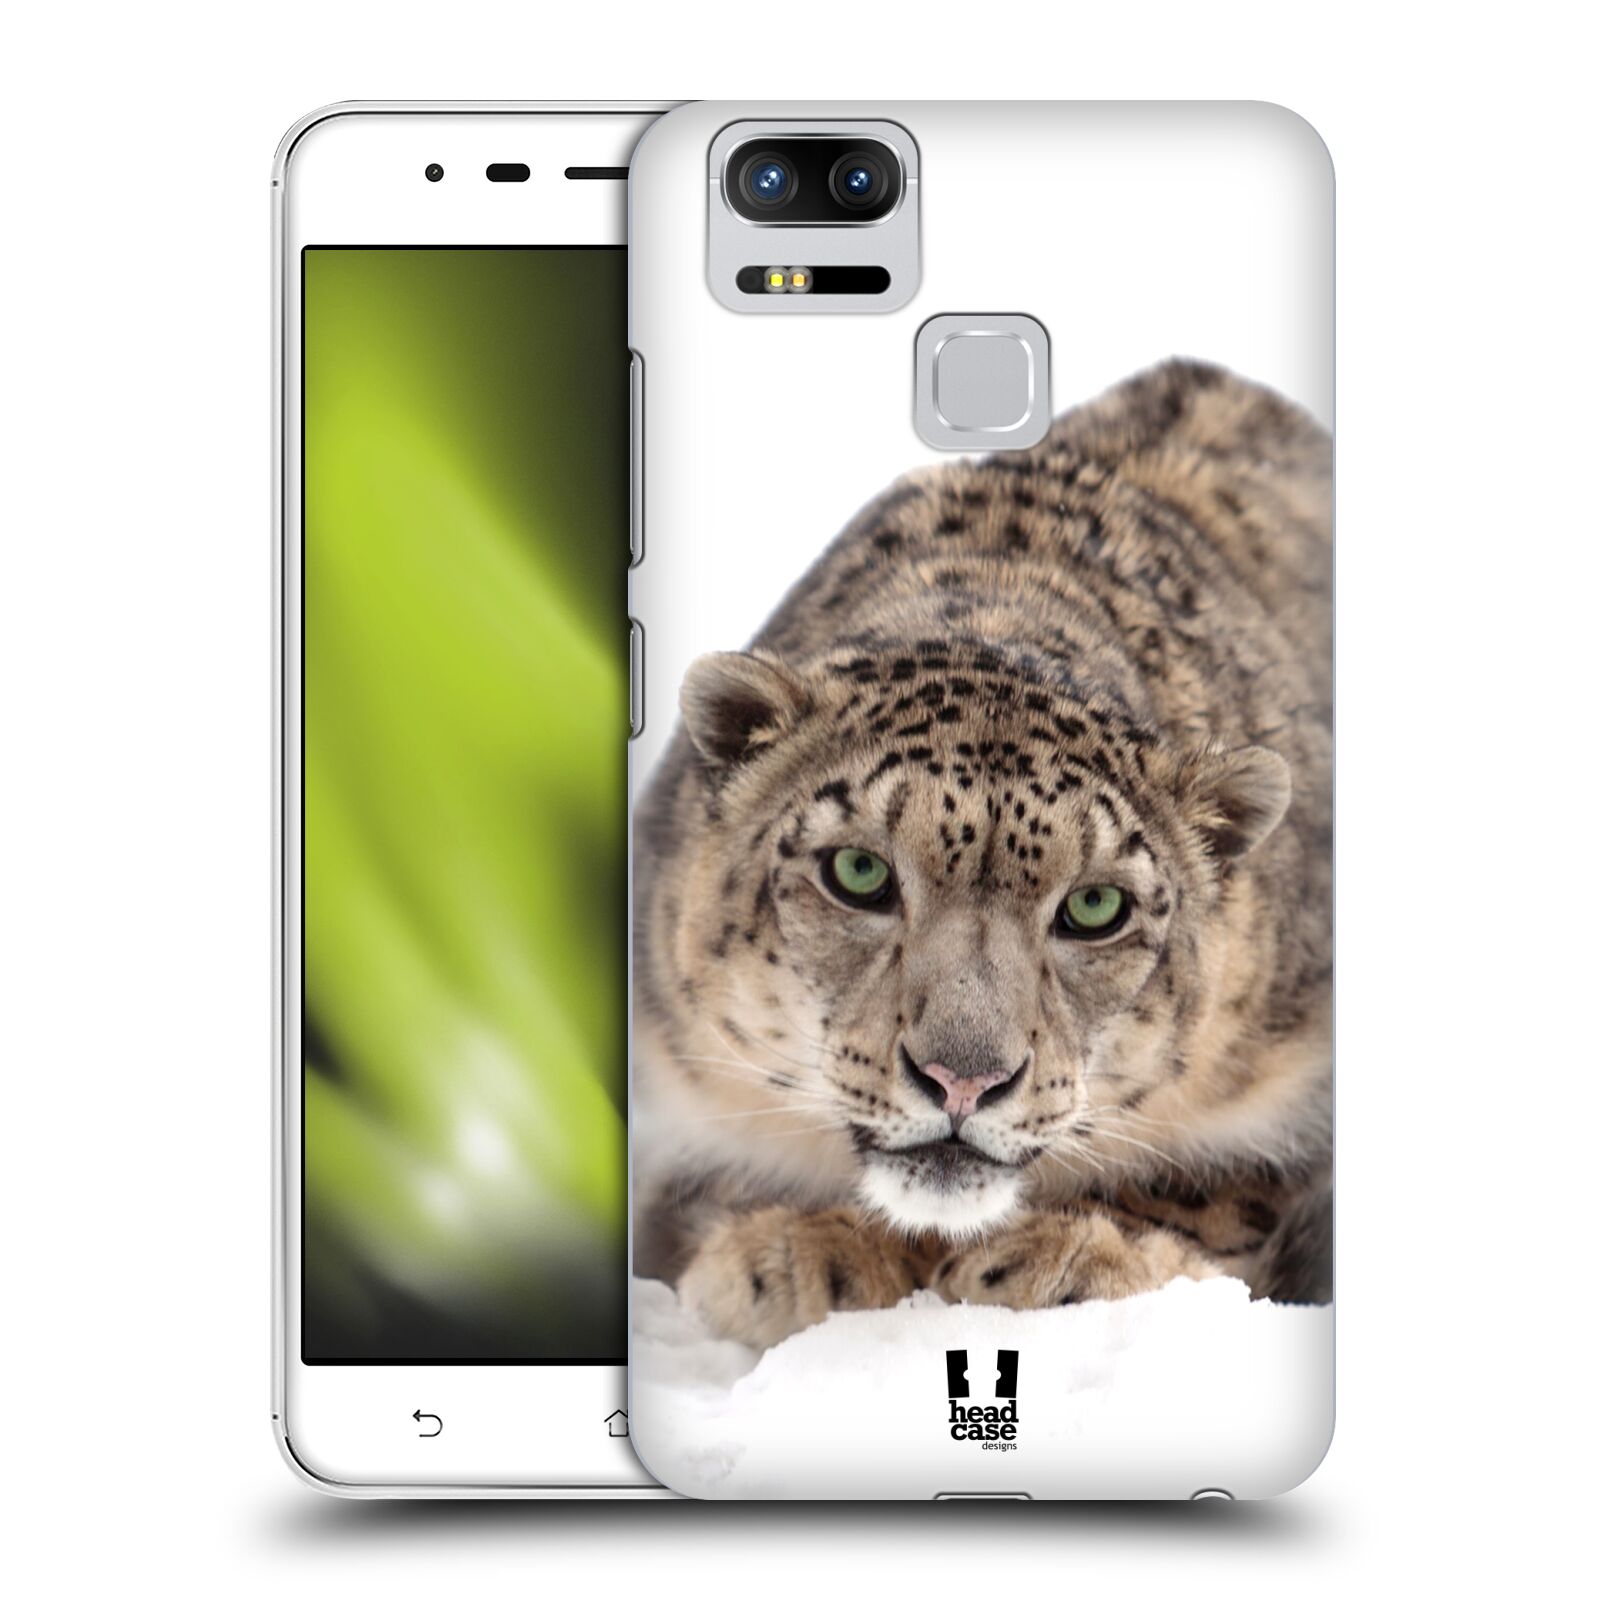 HEAD CASE plastový obal na mobil Asus Zenfone 3 Zoom ZE553KL vzor Divočina, Divoký život a zvířata foto SNĚŽNÝ LEOPARD